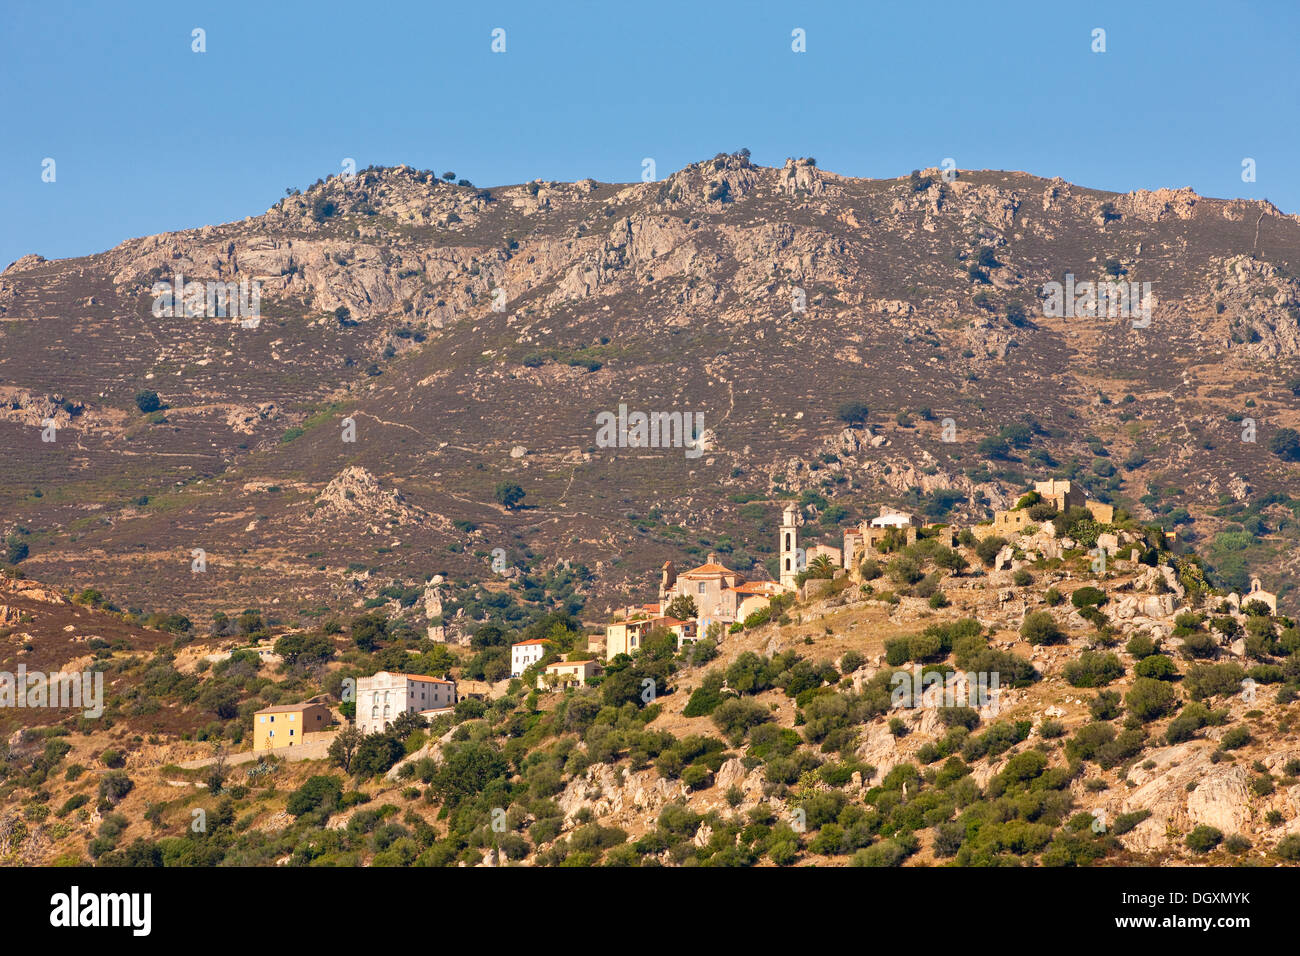 Villaggio di Zilia, Corsica, Francia. Il villaggio in sé è situato ad un altitudine di 278m ai piedi del Monte Grosso (1 938 m) Foto Stock